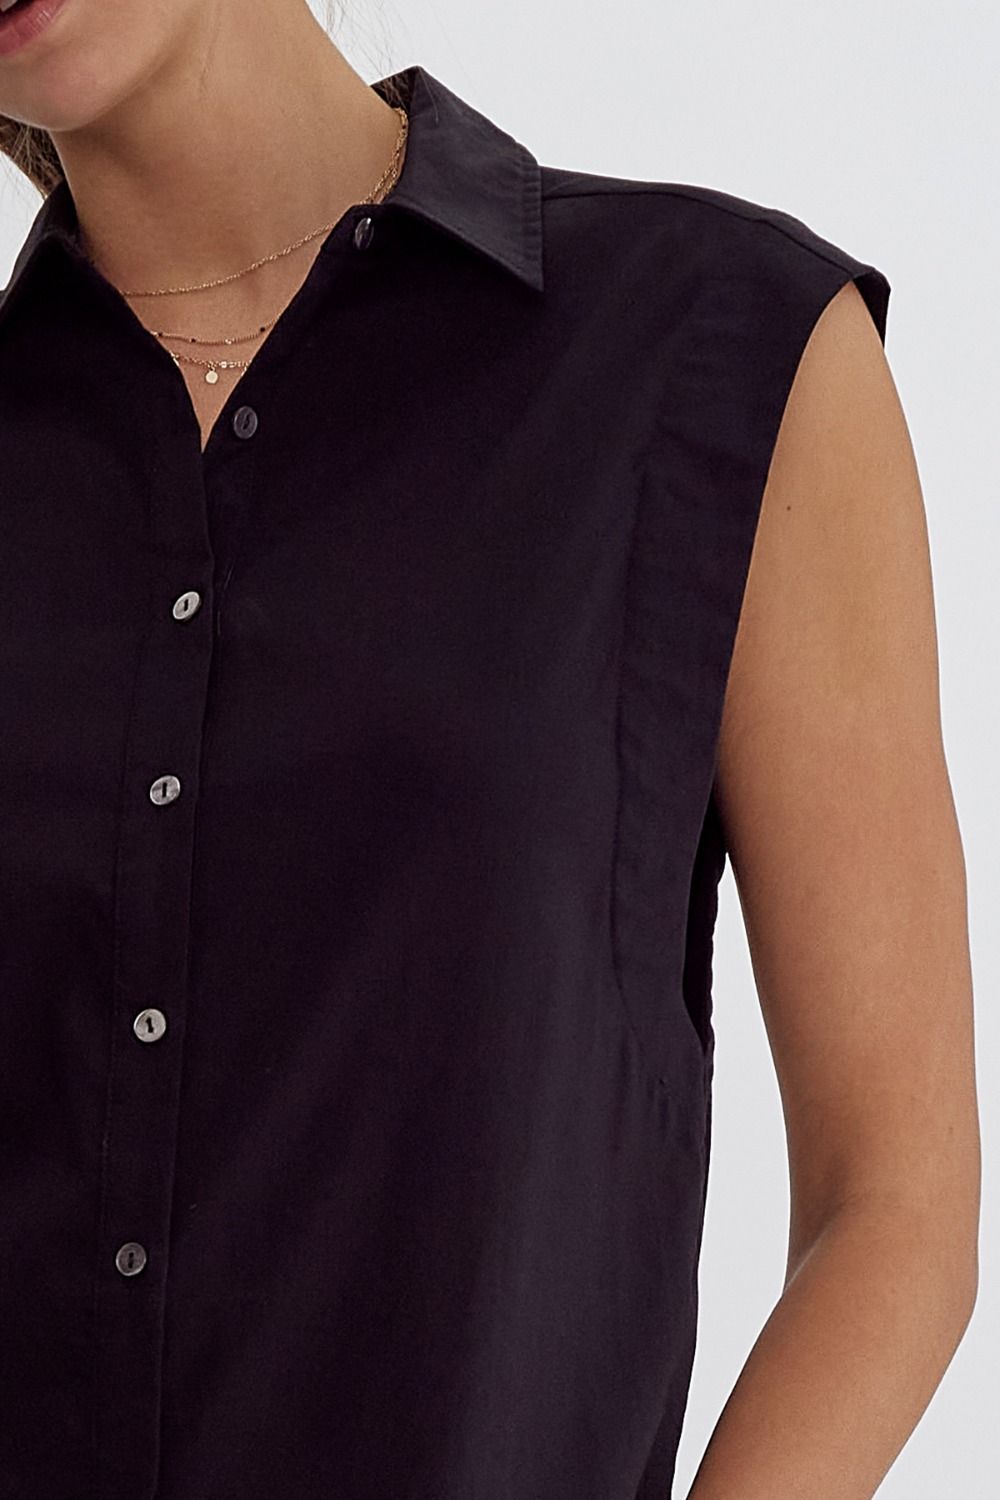 classic sleeveless button down blouse entro brand